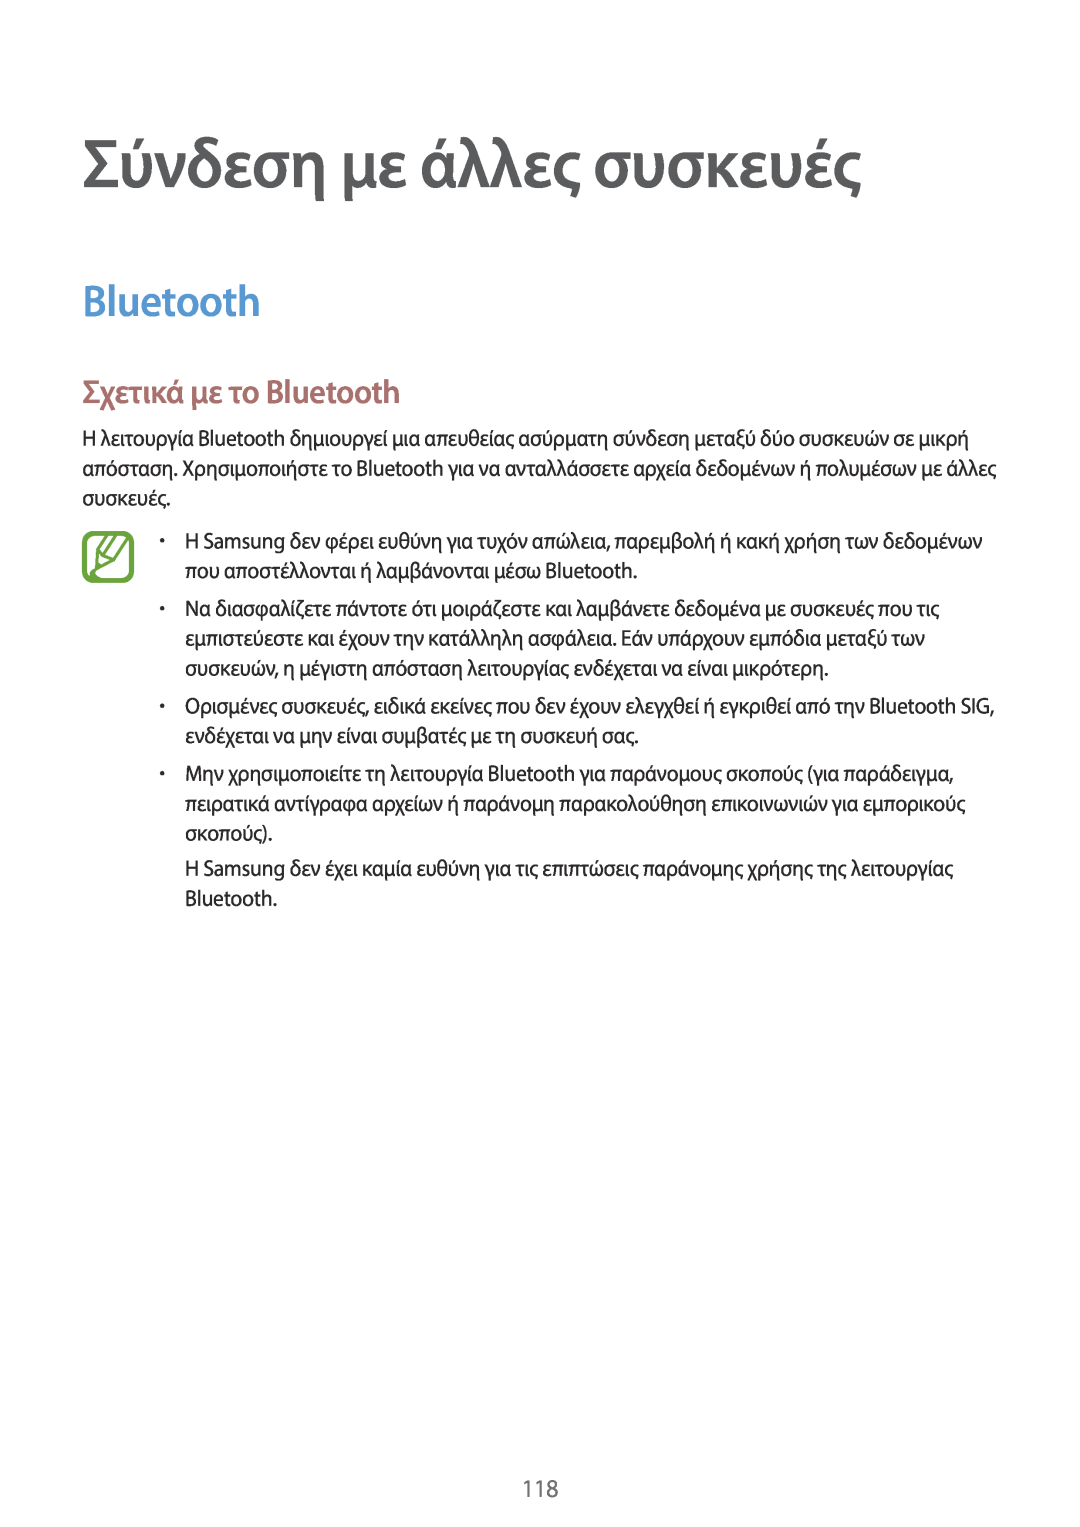 Samsung SM-T805NZWAEUR, SM-T805NTSAEUR, SM-T705NZWAEUR manual Σύνδεση με άλλες συσκευές, Σχετικά με το Bluetooth 